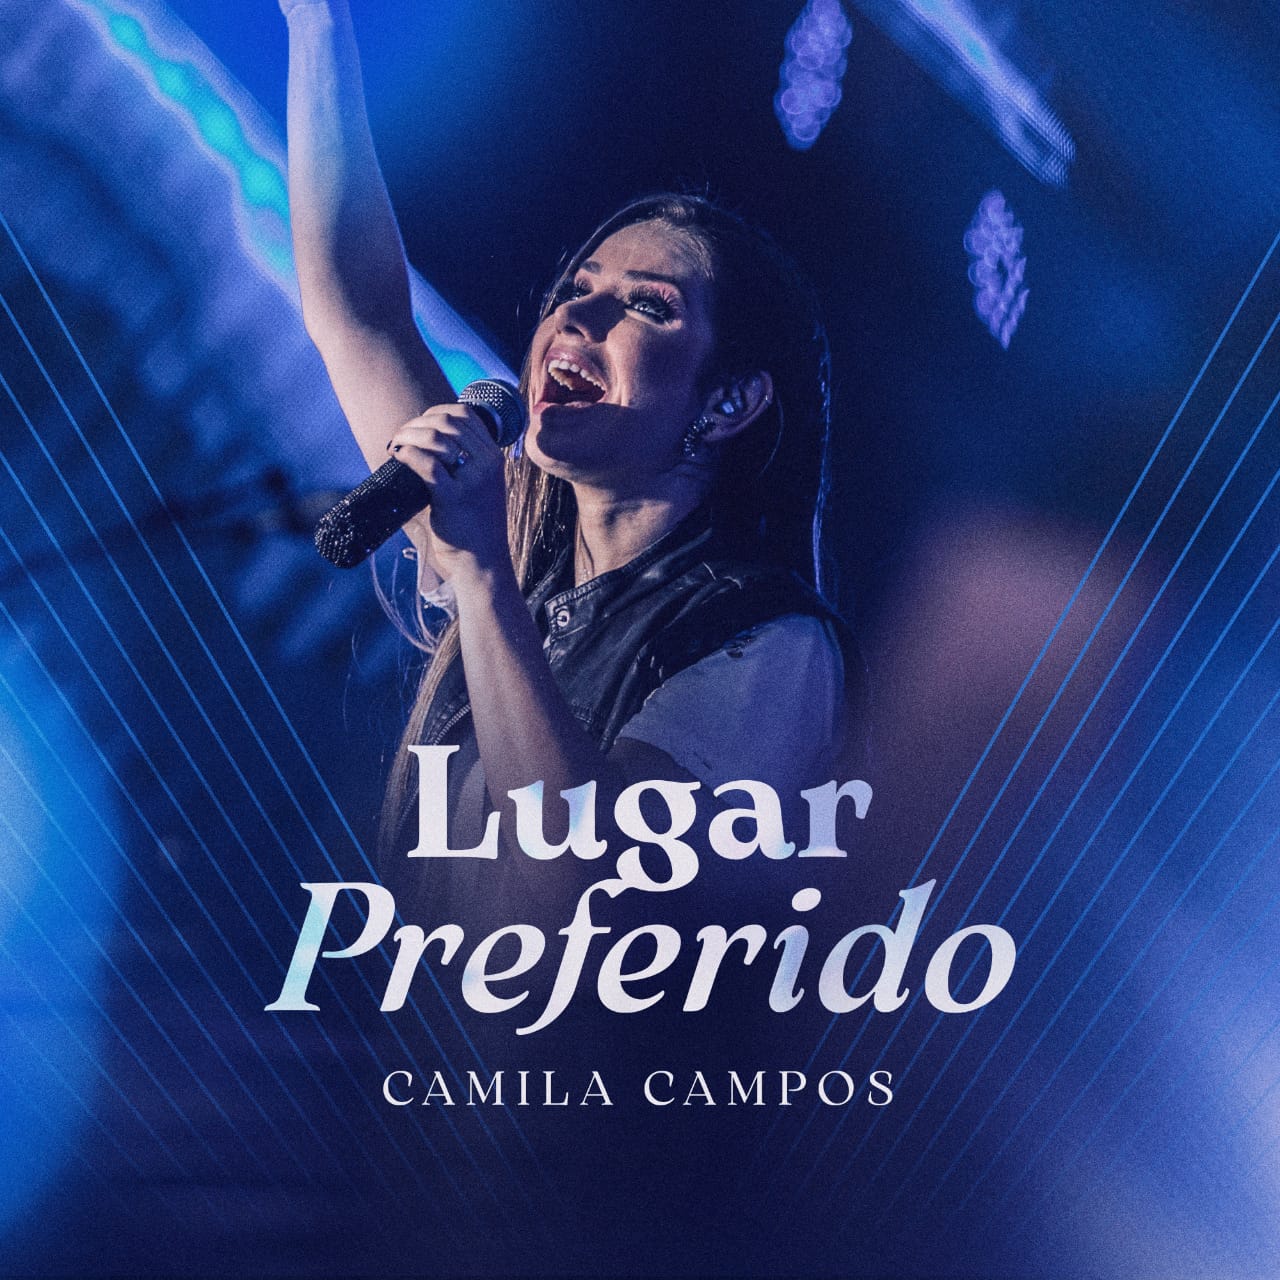 “Lugar Preferido”, adoração em forma de canção, é o novo single de Camila Campos